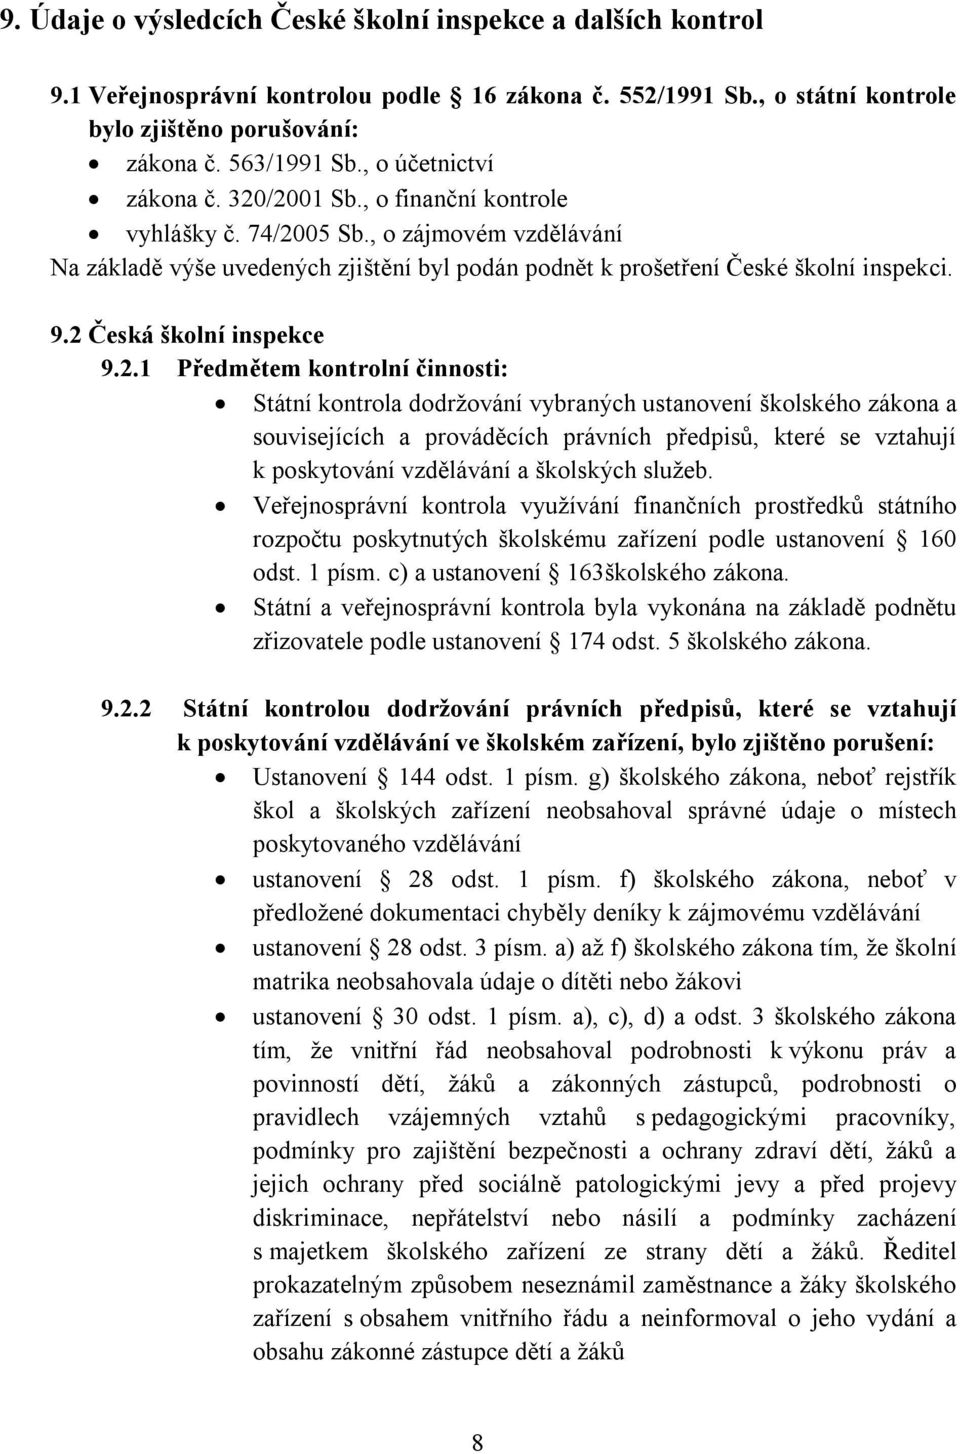 2 Česká školní inspekce 9.2.1 Předmětem kontrolní činnosti: Státní kontrola dodržování vybraných ustanovení školského zákona a souvisejících a prováděcích právních předpisů, které se vztahují k